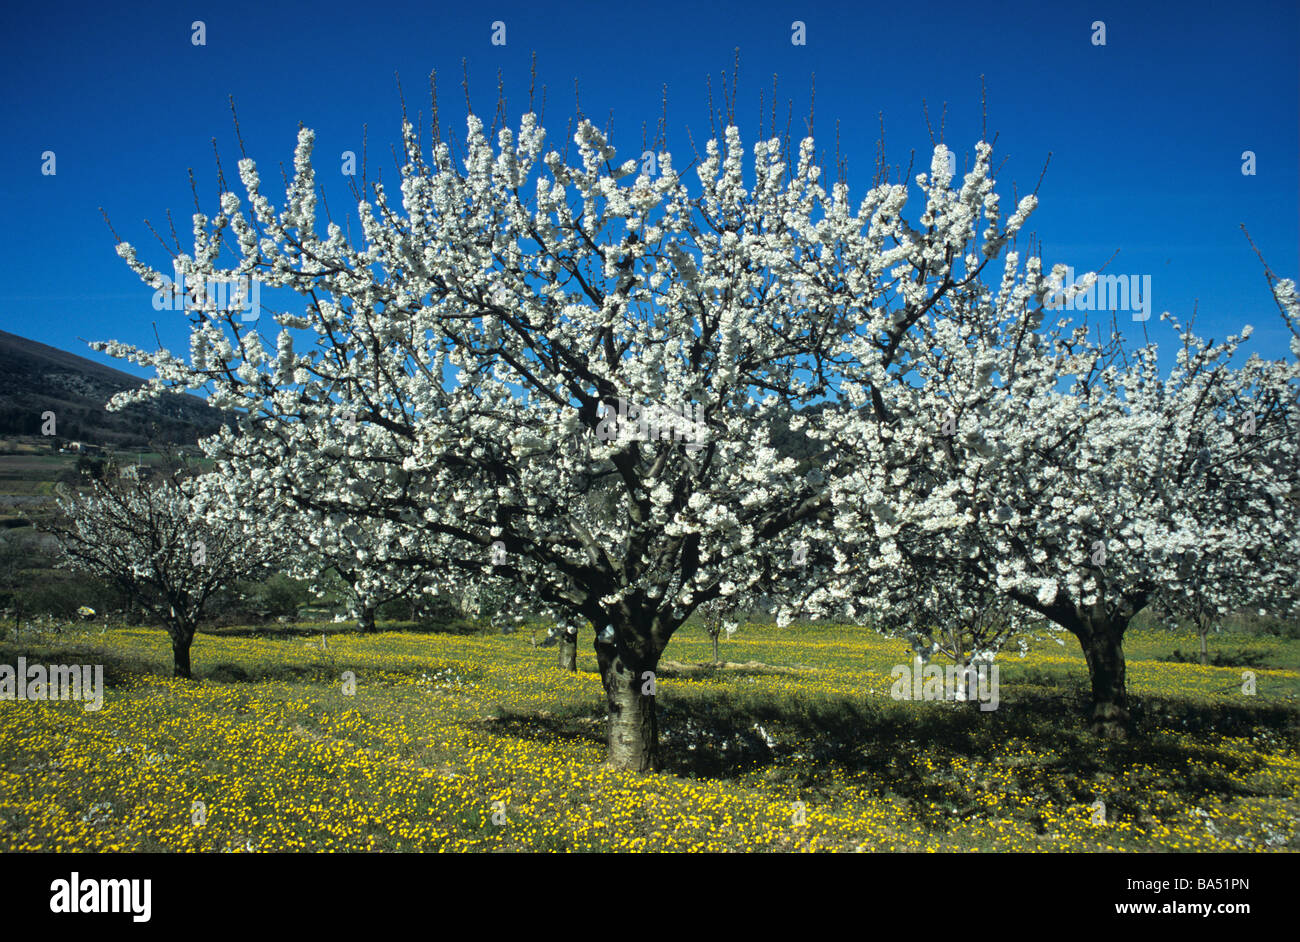 Printemps des Cerisiers en fleurs dans les vergers de Provence, Luberon, Provence, France Banque D'Images